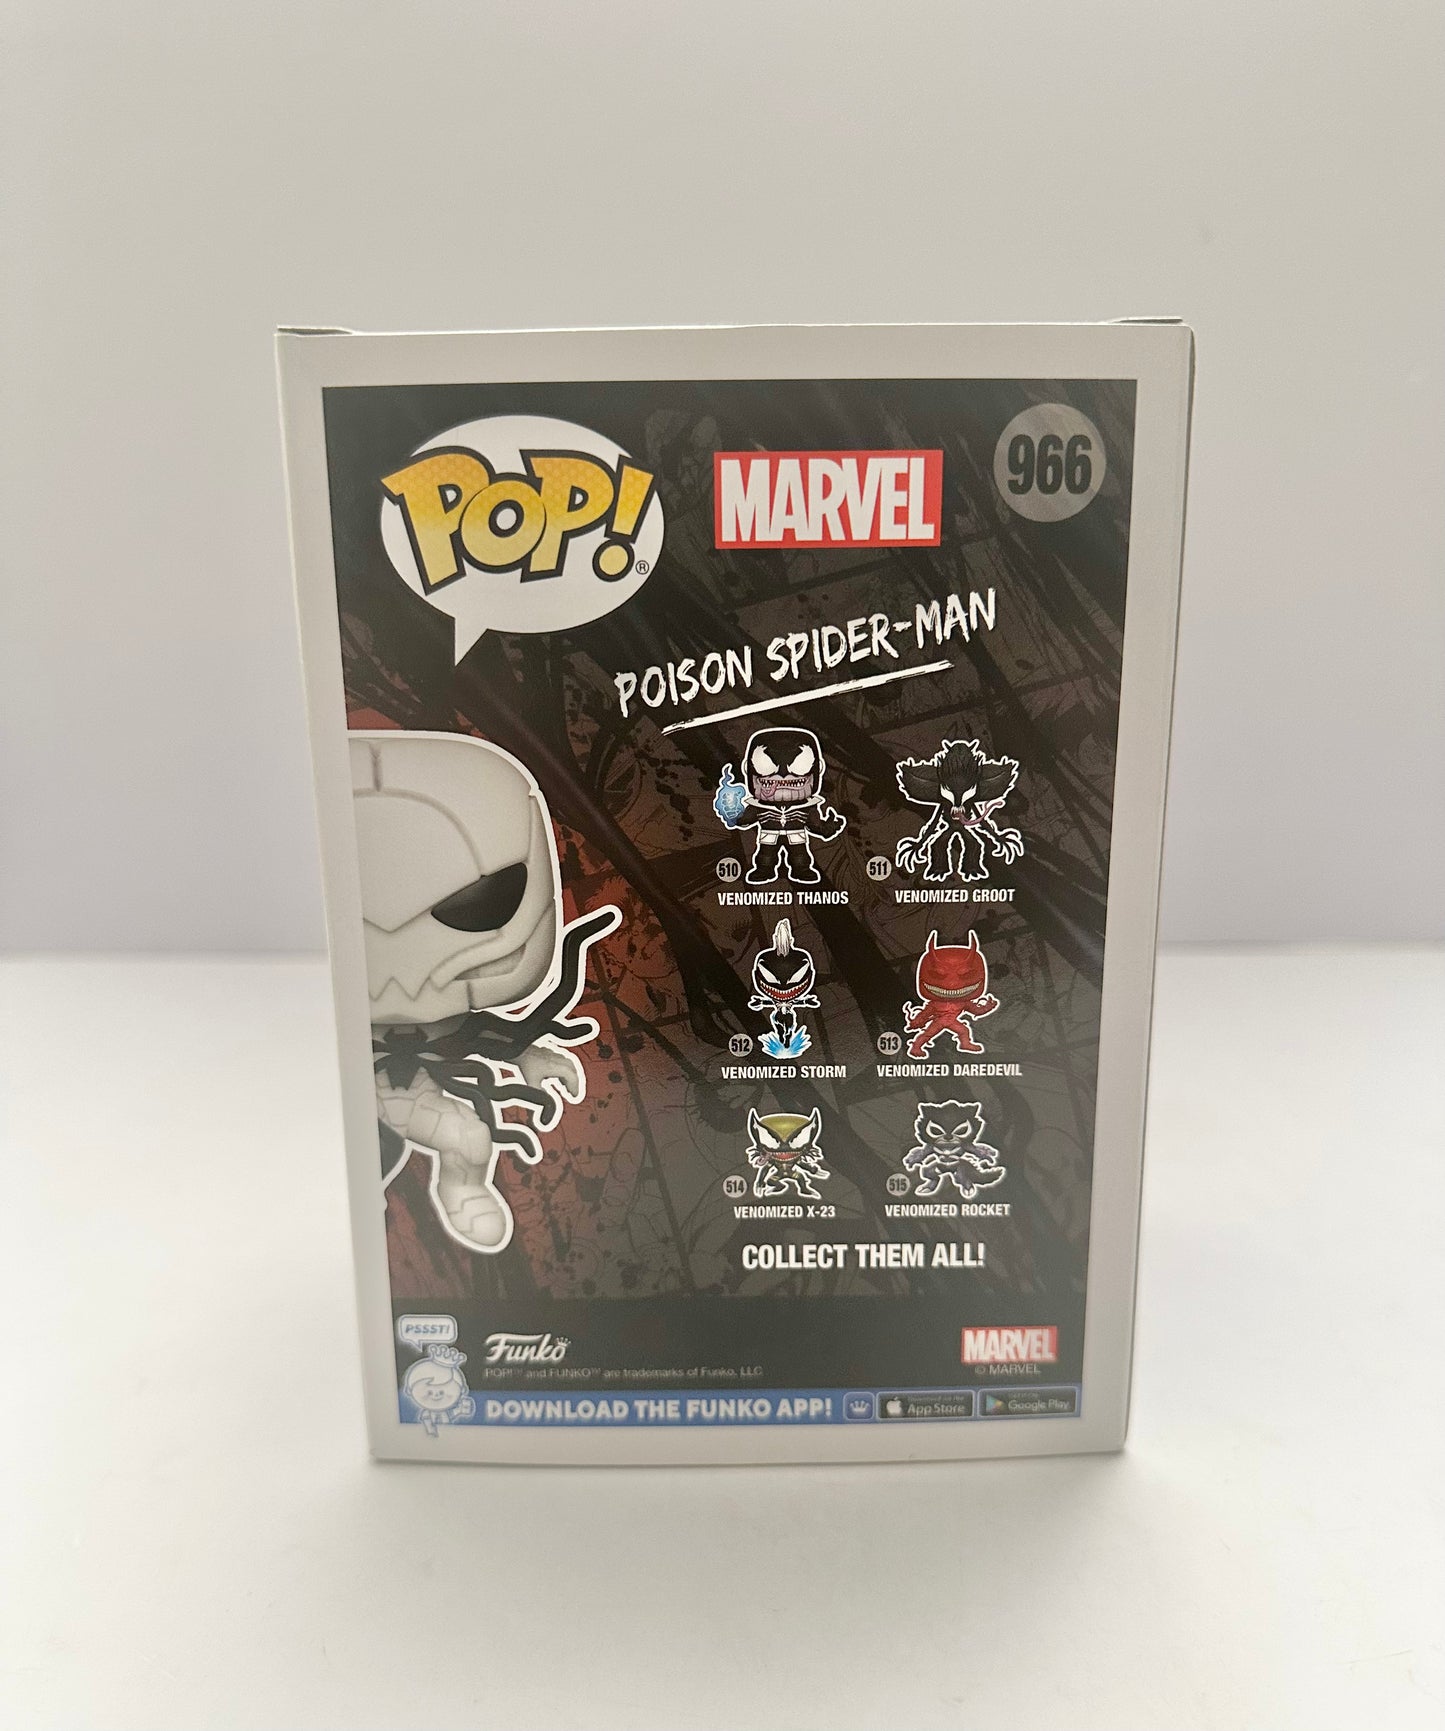 Funko Pop! Poison Spider-Man - 966